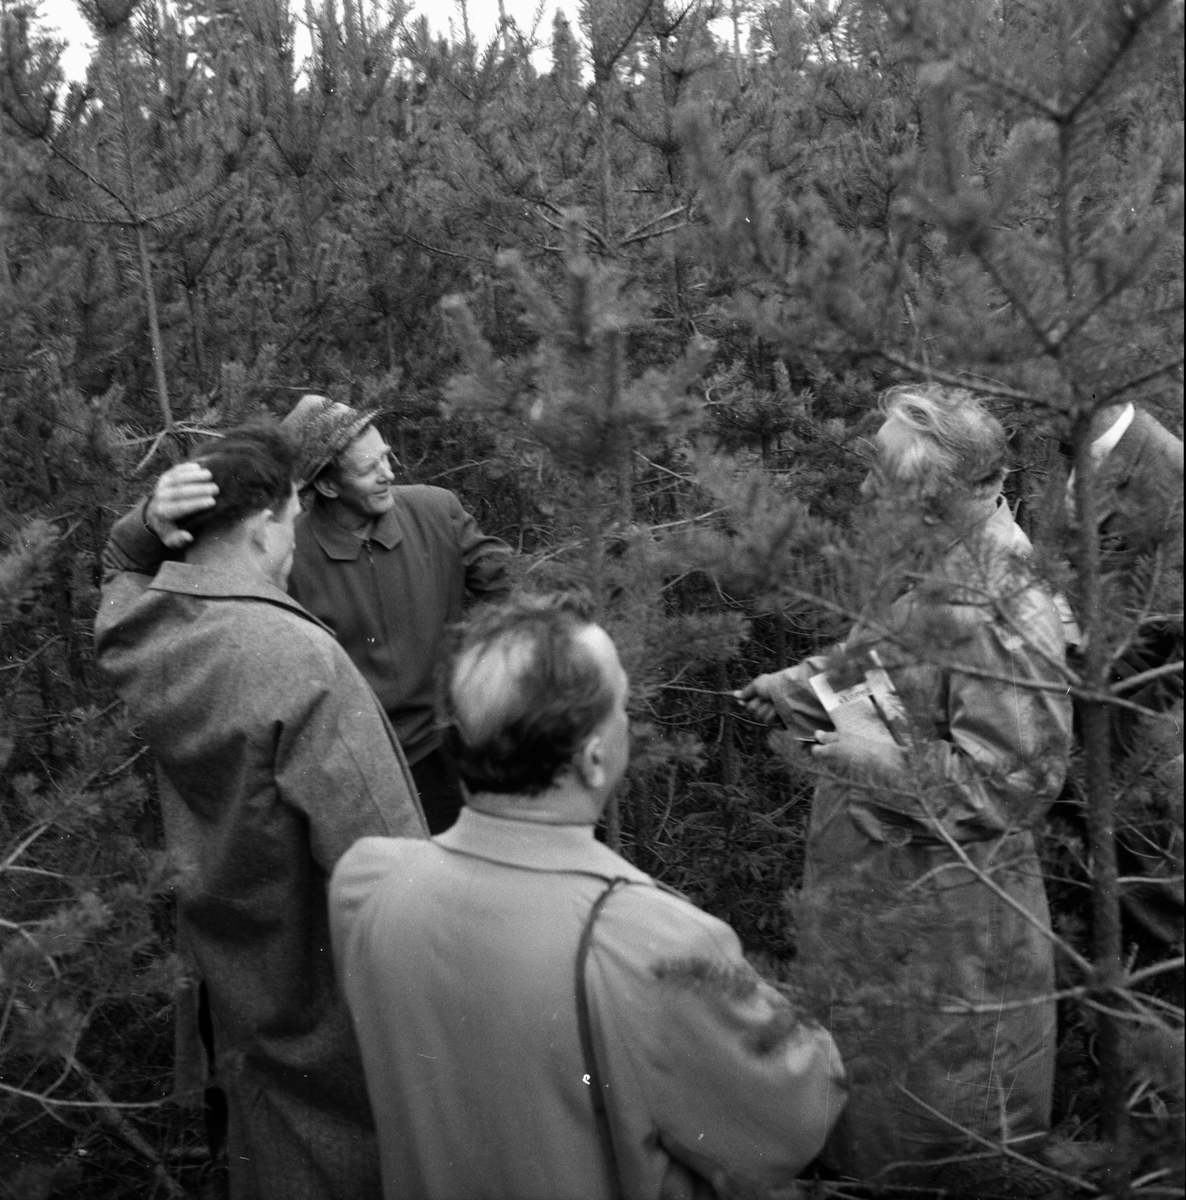 Ryska skogsmän på besök.
7/10 1958